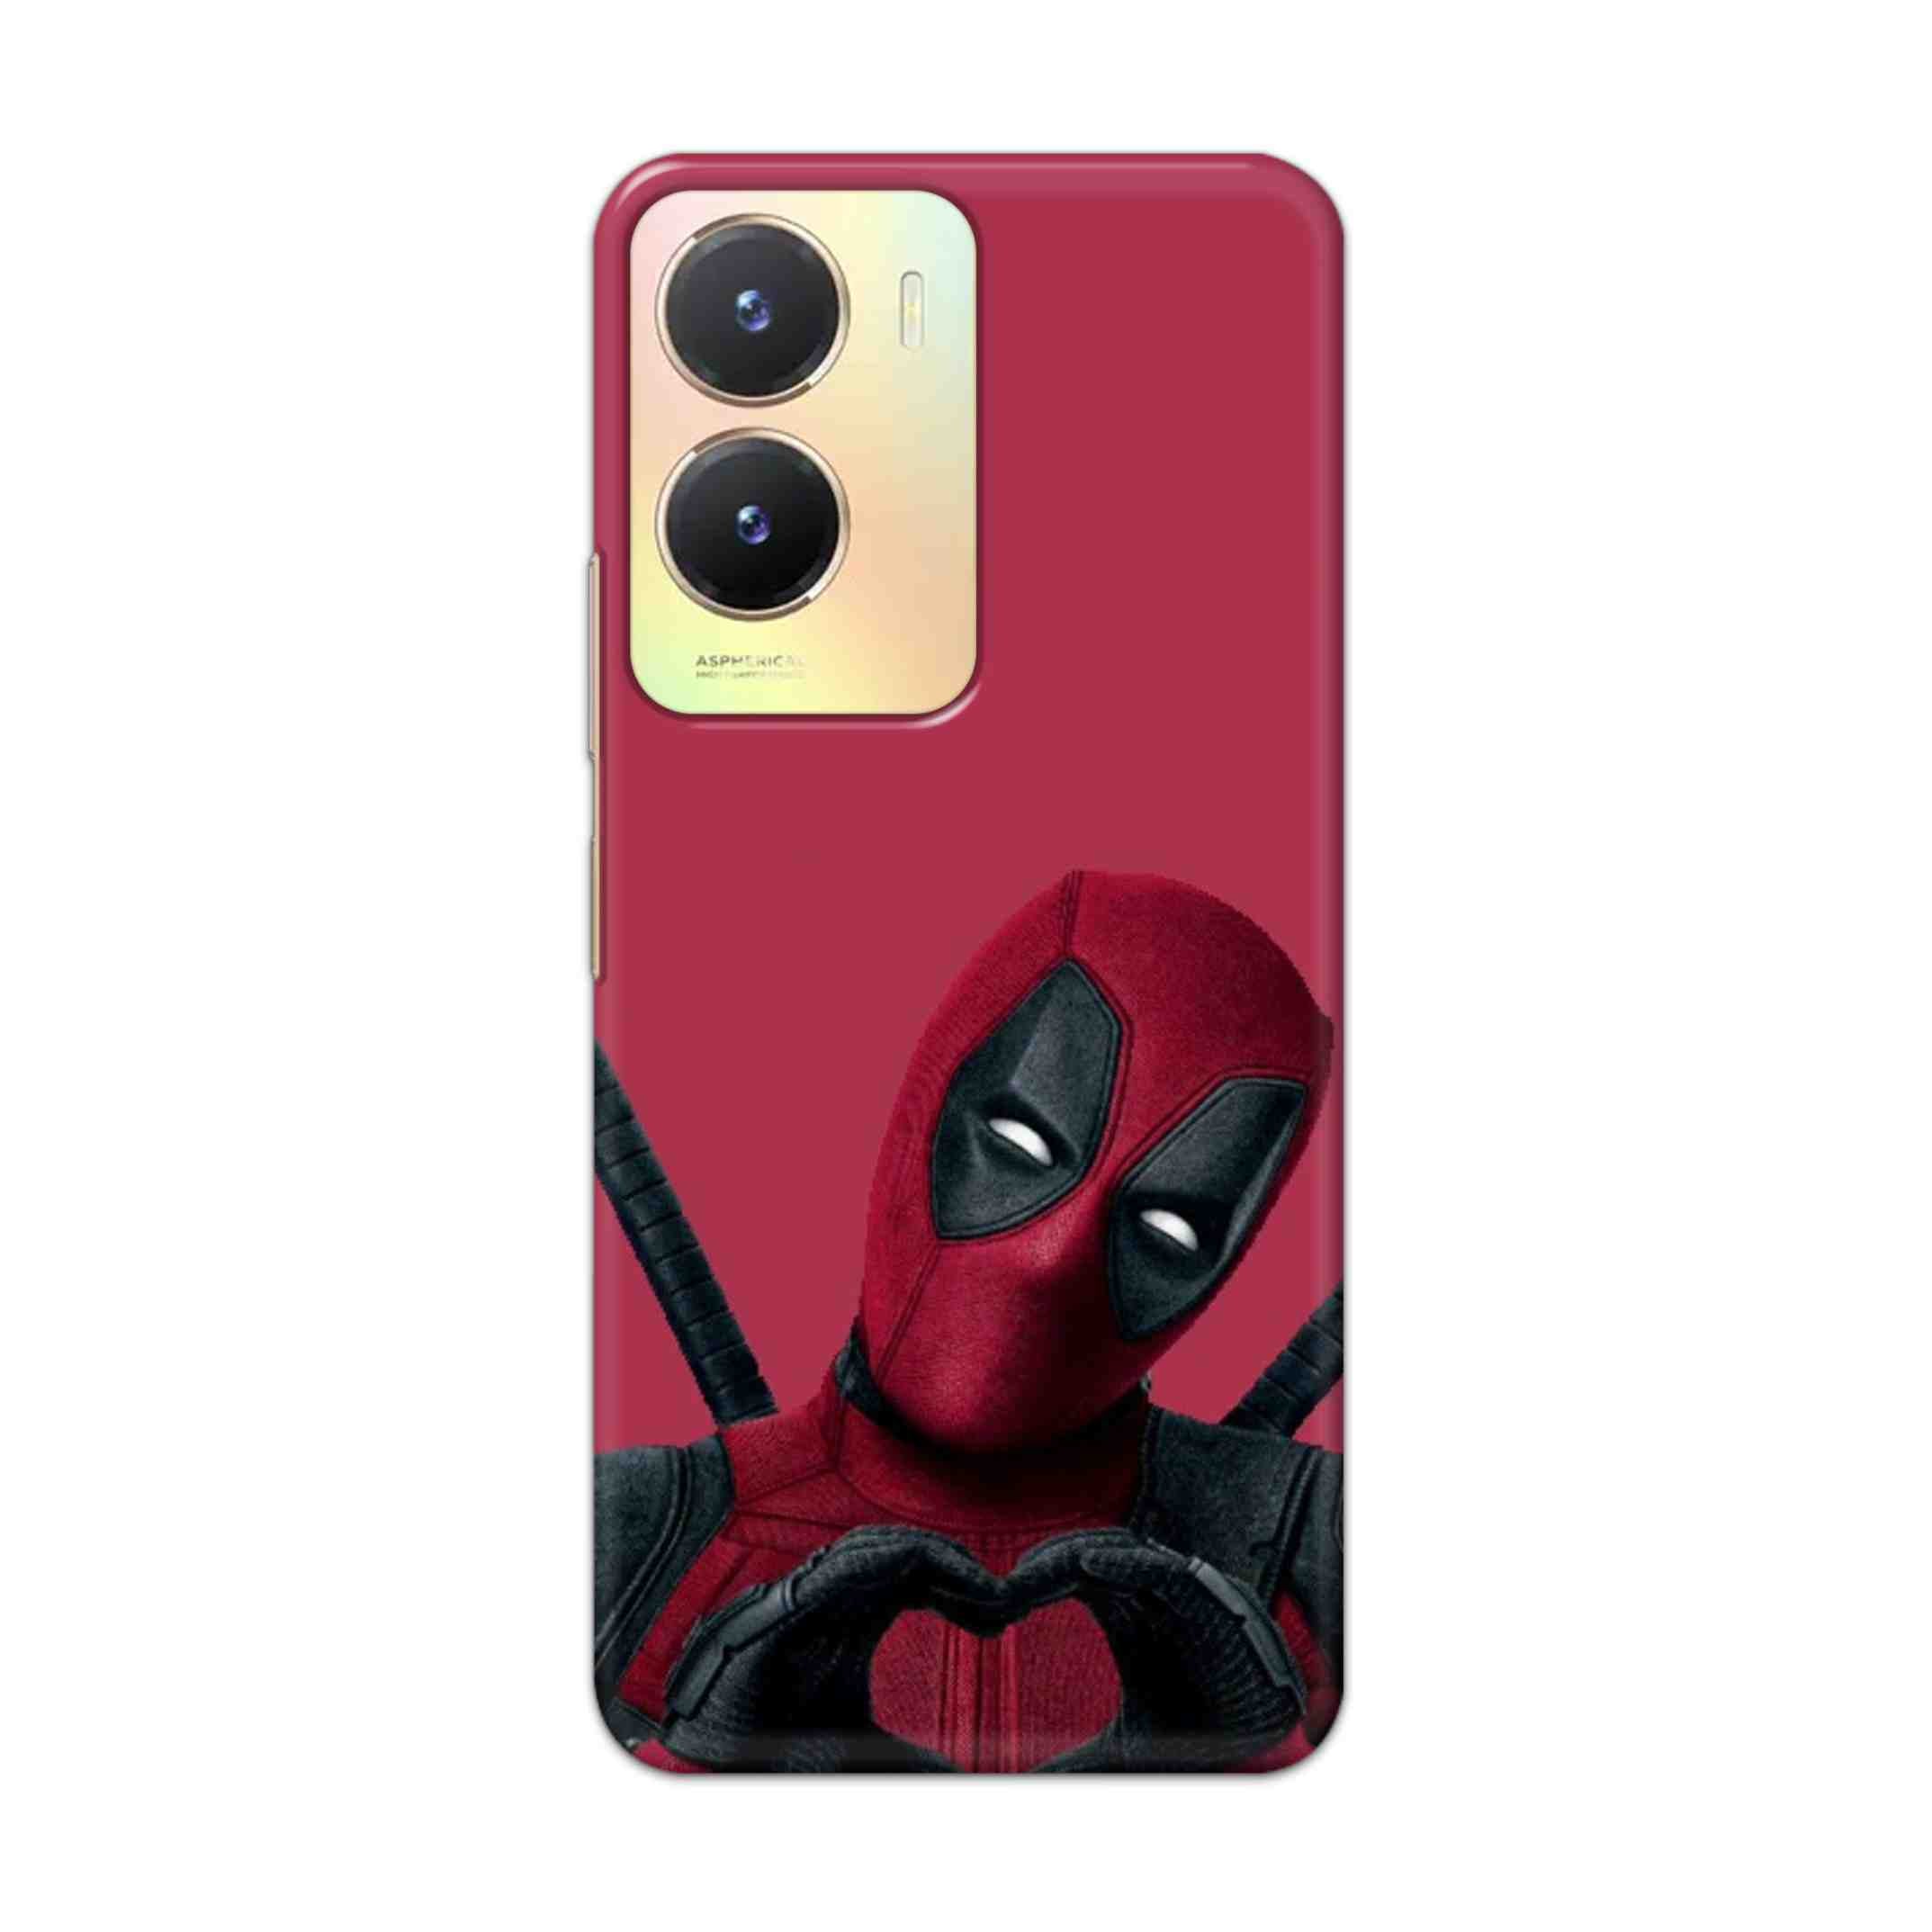 Buy Deadpool Heart Hard Back Mobile Phone Case Cover For Vivo T2x Online